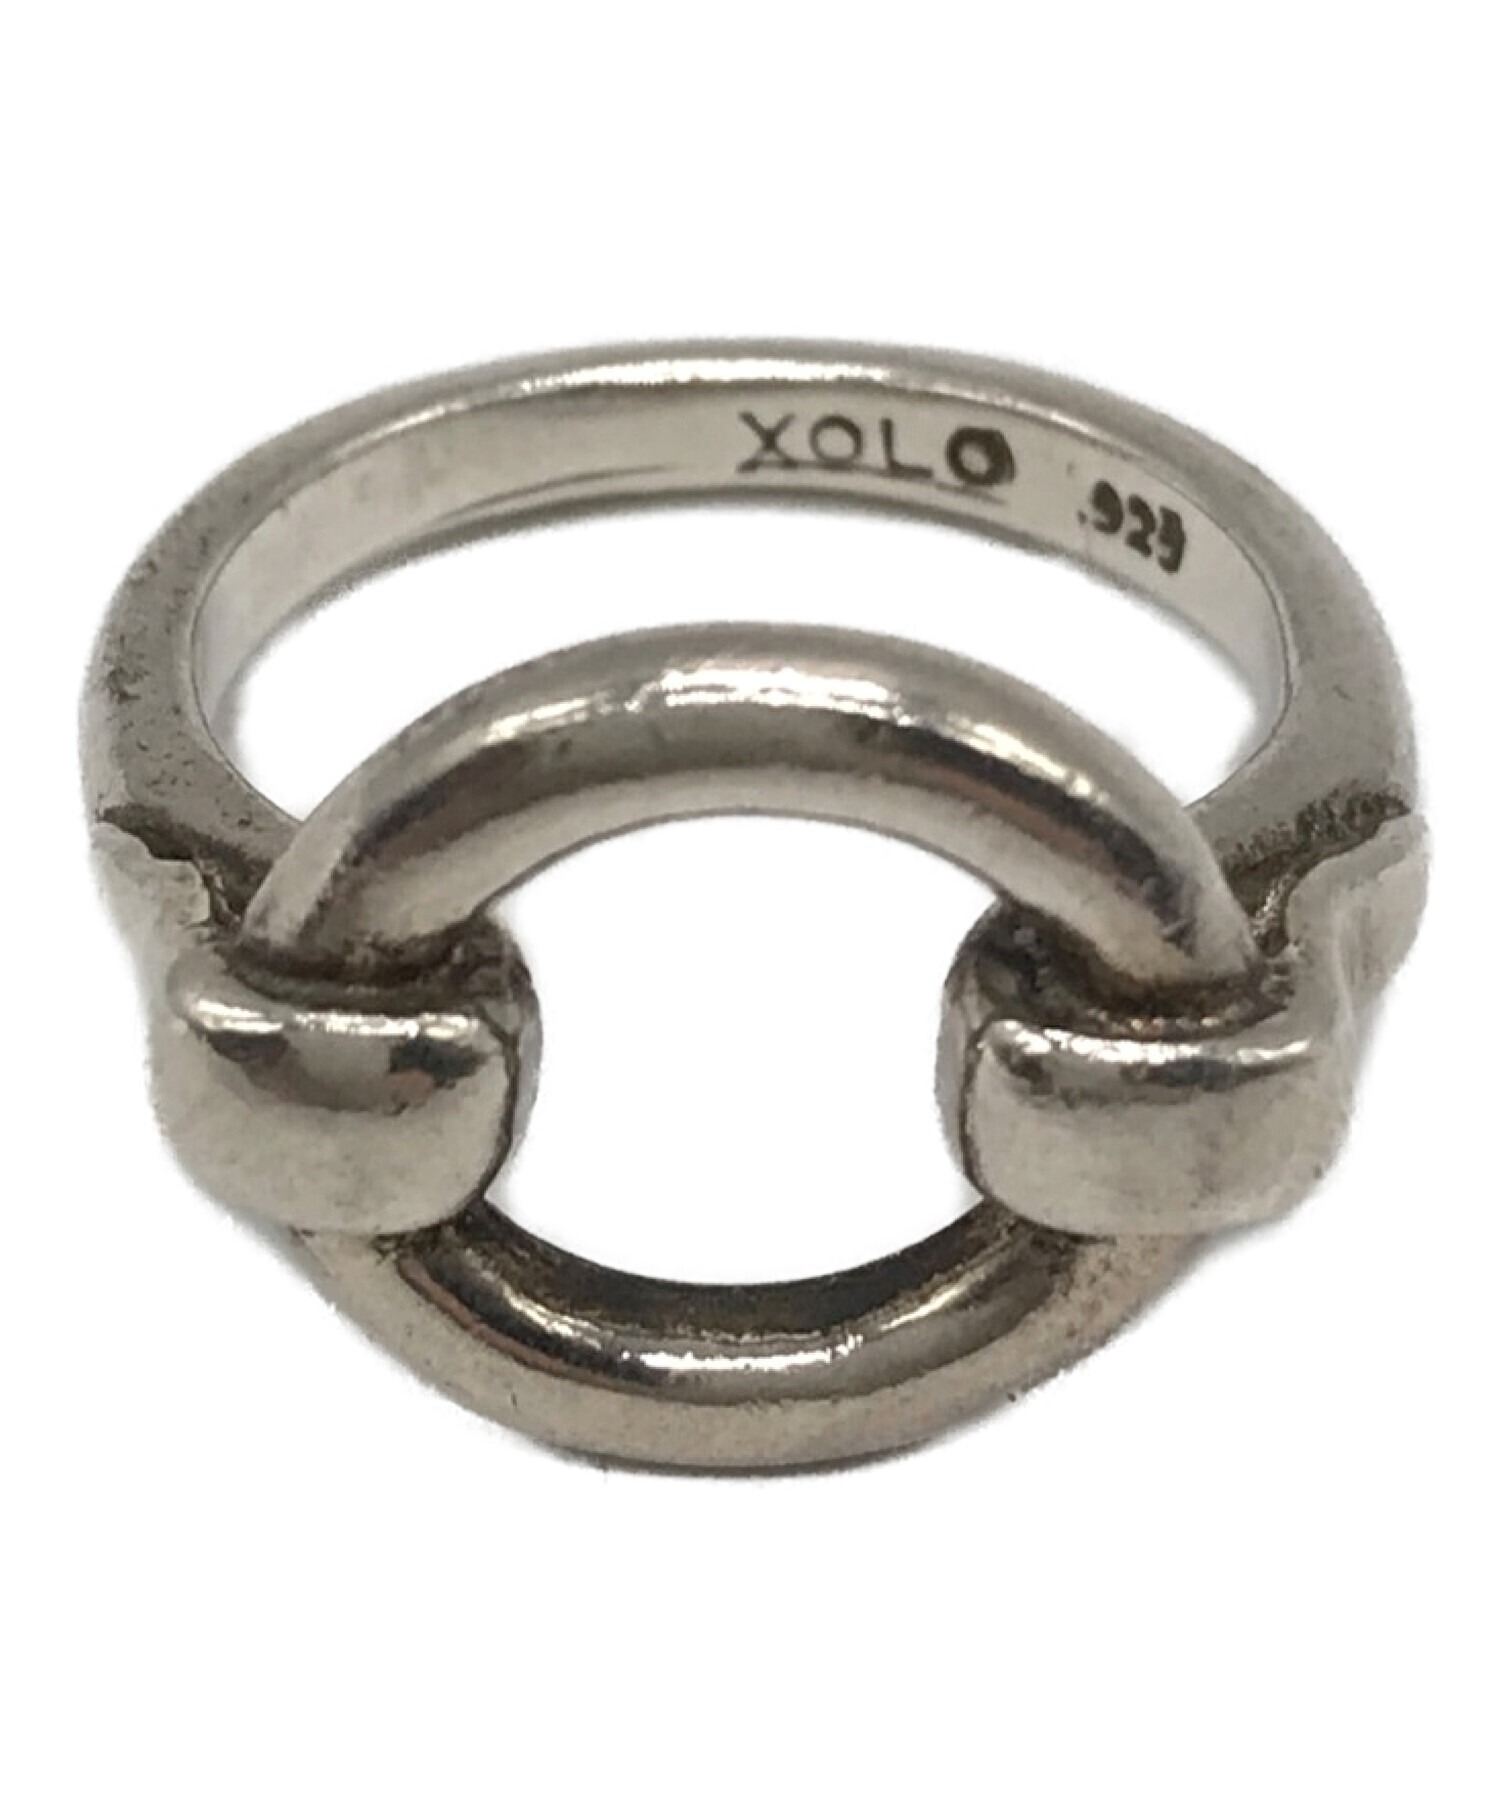 XOLO (ショロ) CIRCLE RING サイズ:表記無し